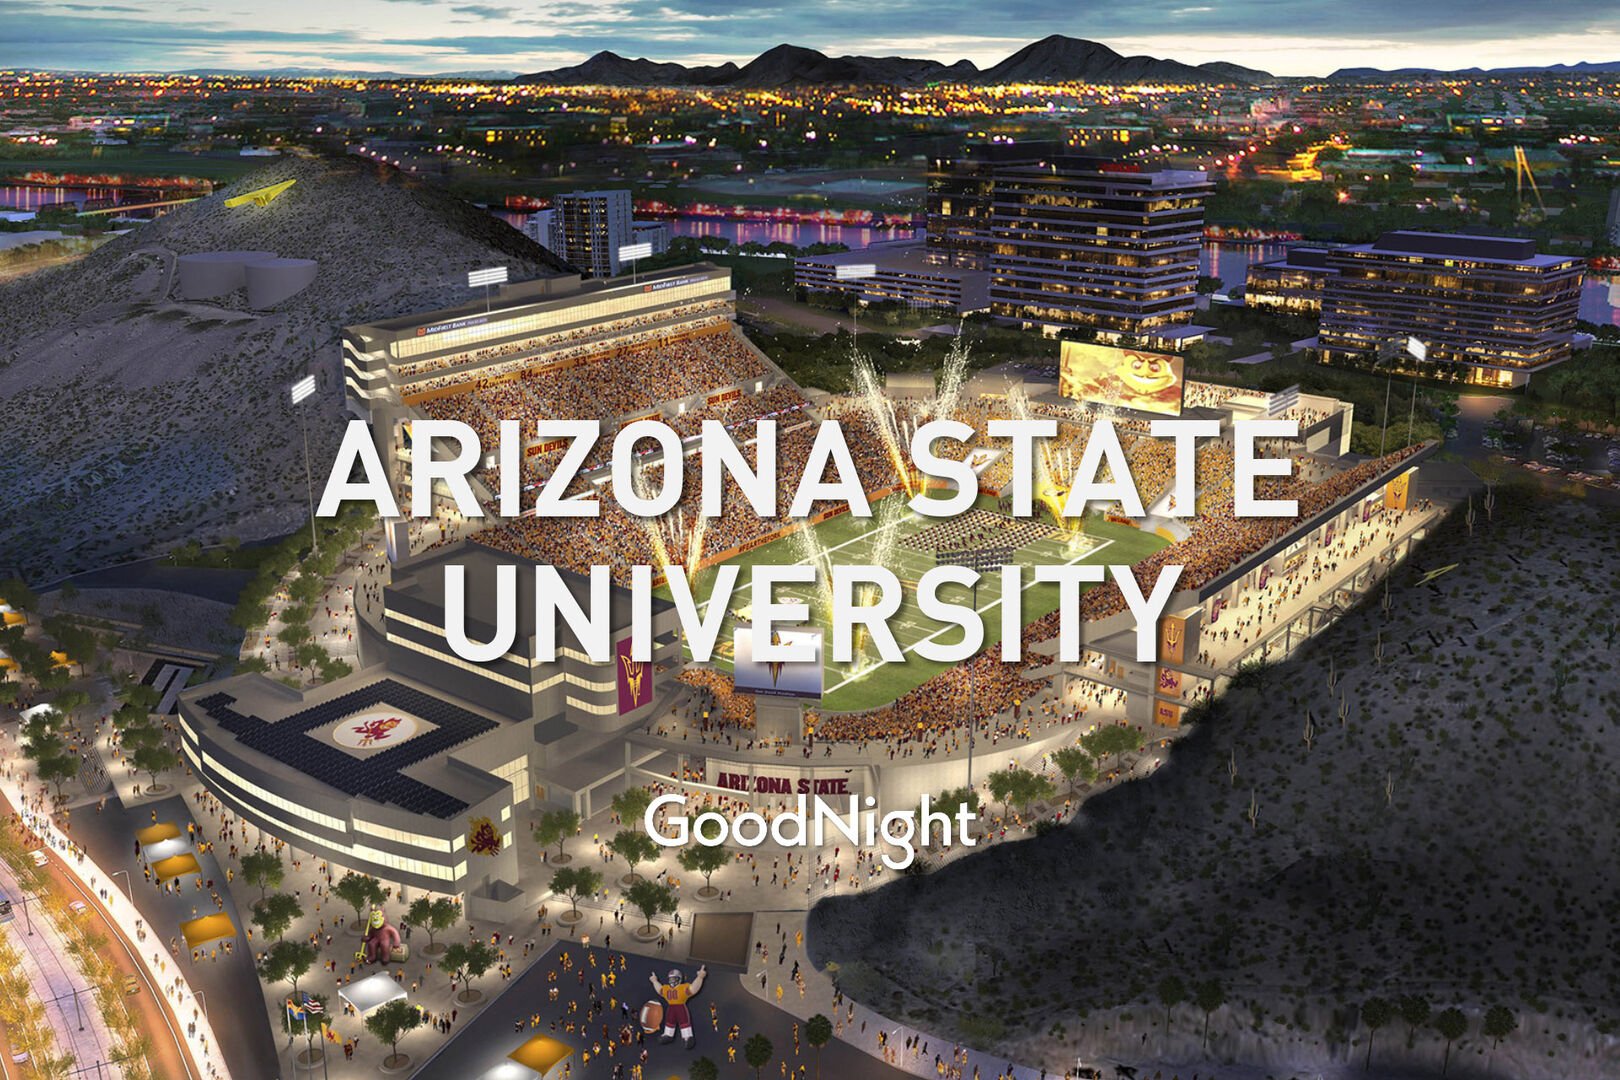 9 mins: Arizona State University